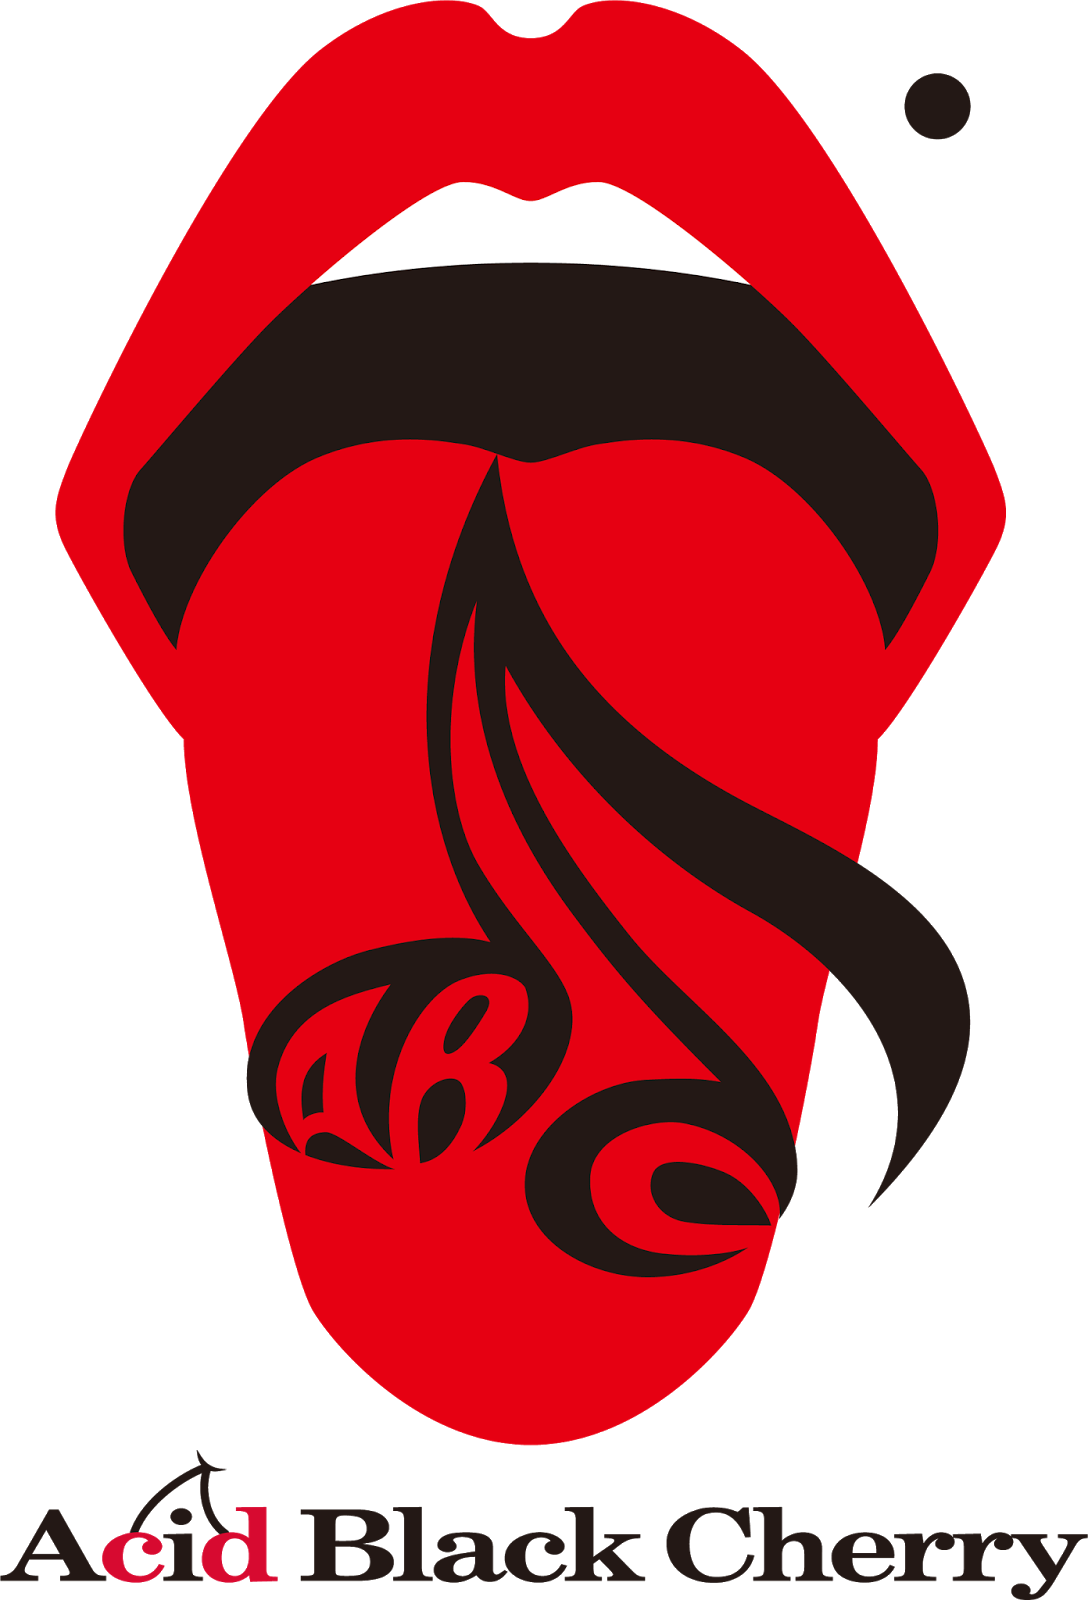 Logodol 全てが高画質 背景透過なアーティストのロゴをお届けするブログ Acid Black Cherry の高画質 透過ロゴ５種 キスマークのロゴもあるよ